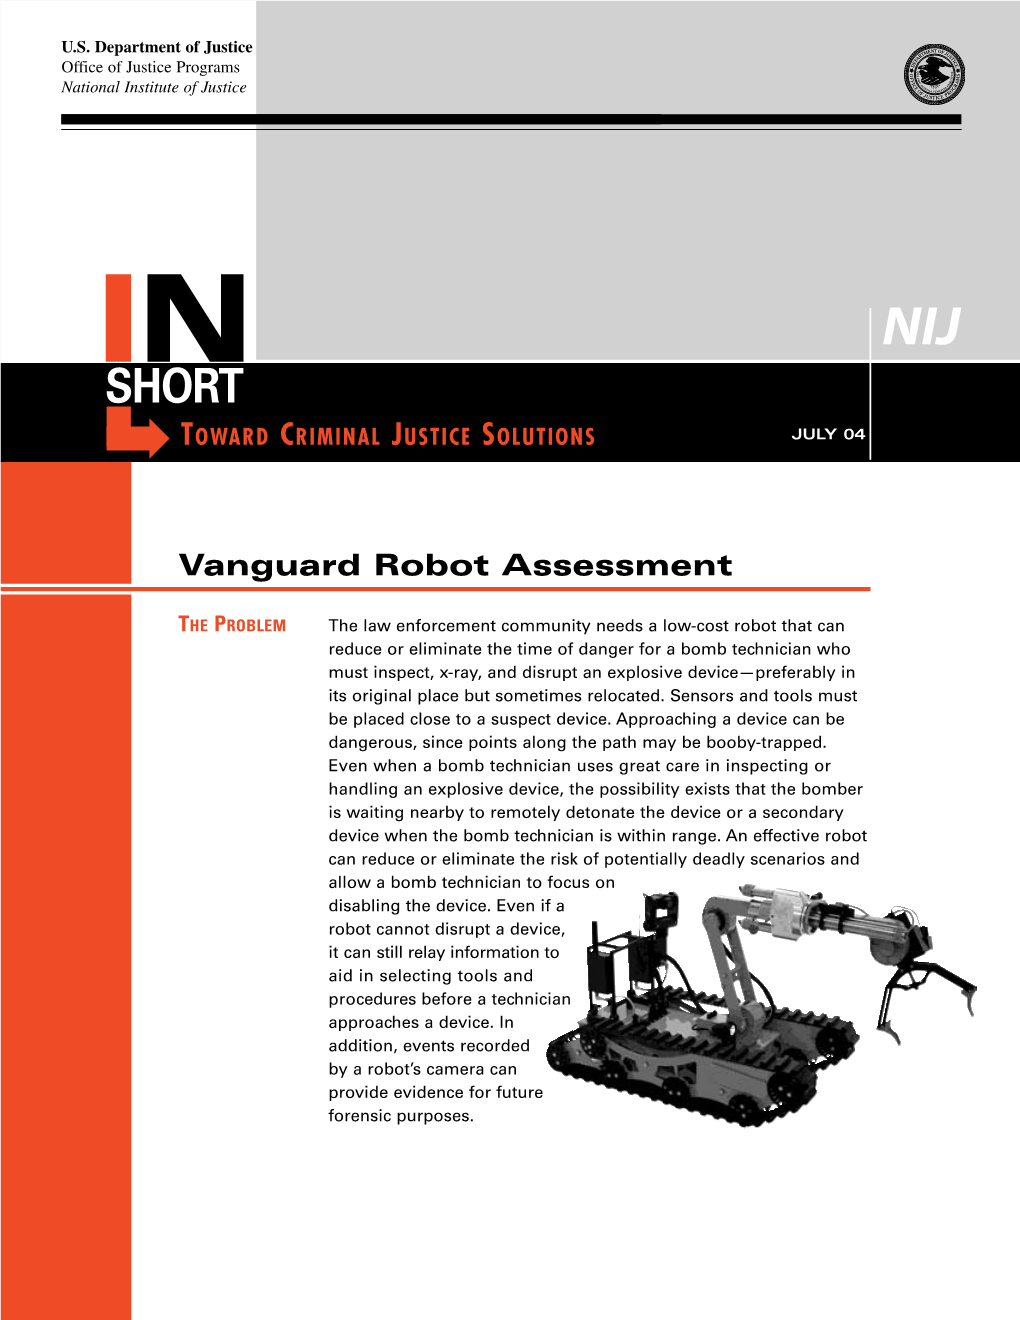 Vanguard Robot Assessment